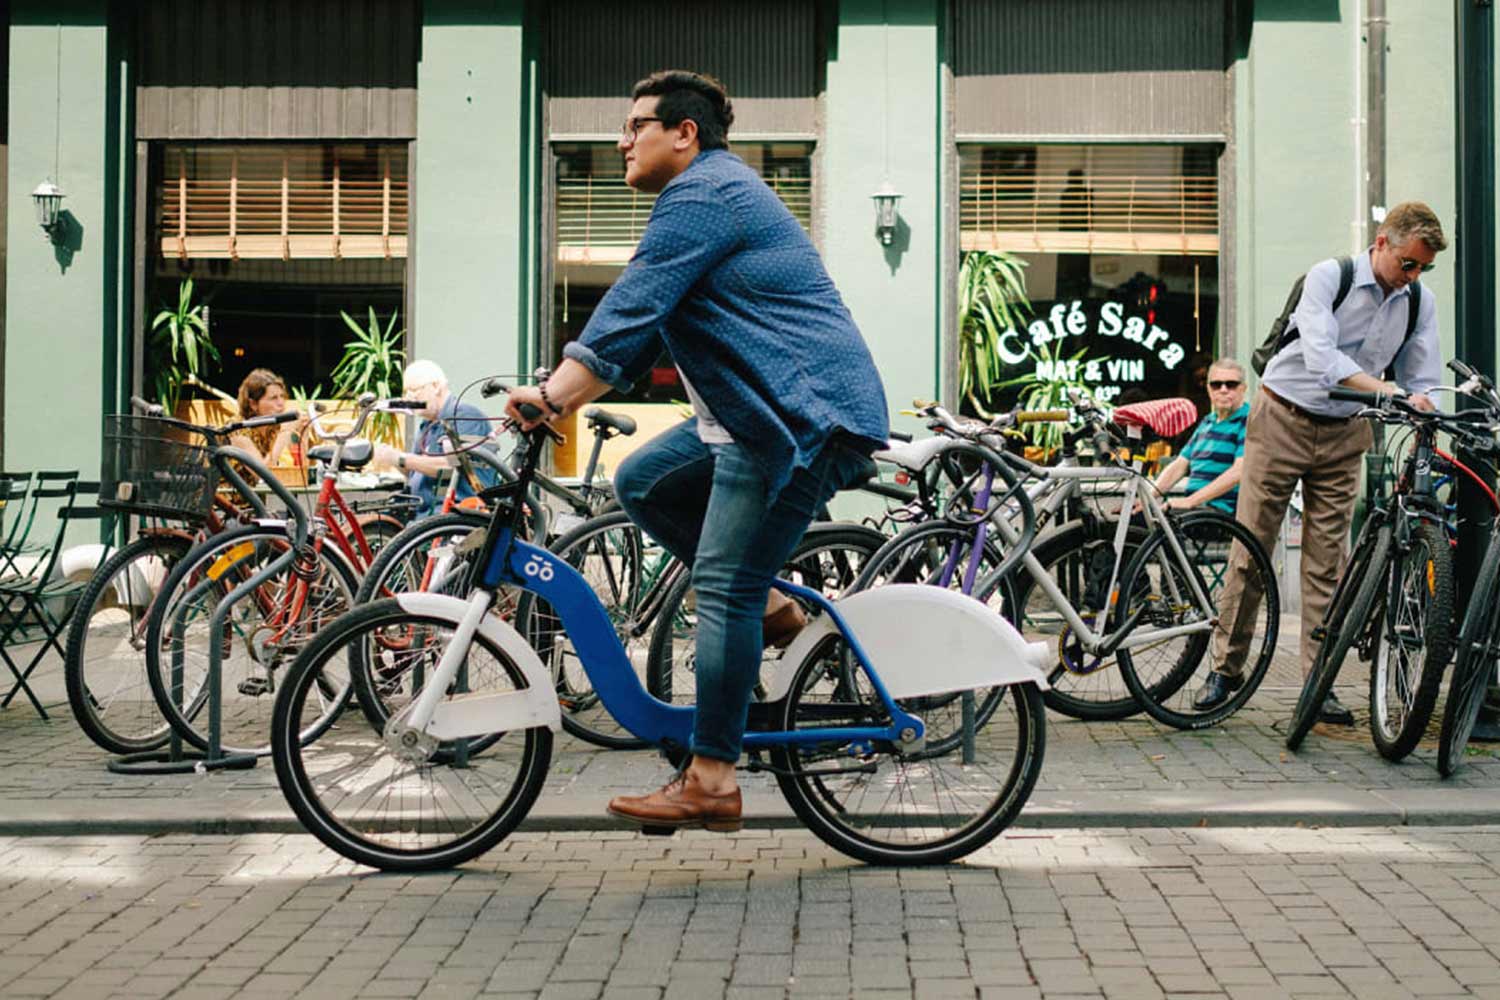 Uomo in bici, davanti a un bar al di fuori del quale sono parcheggiate diverse biciclette